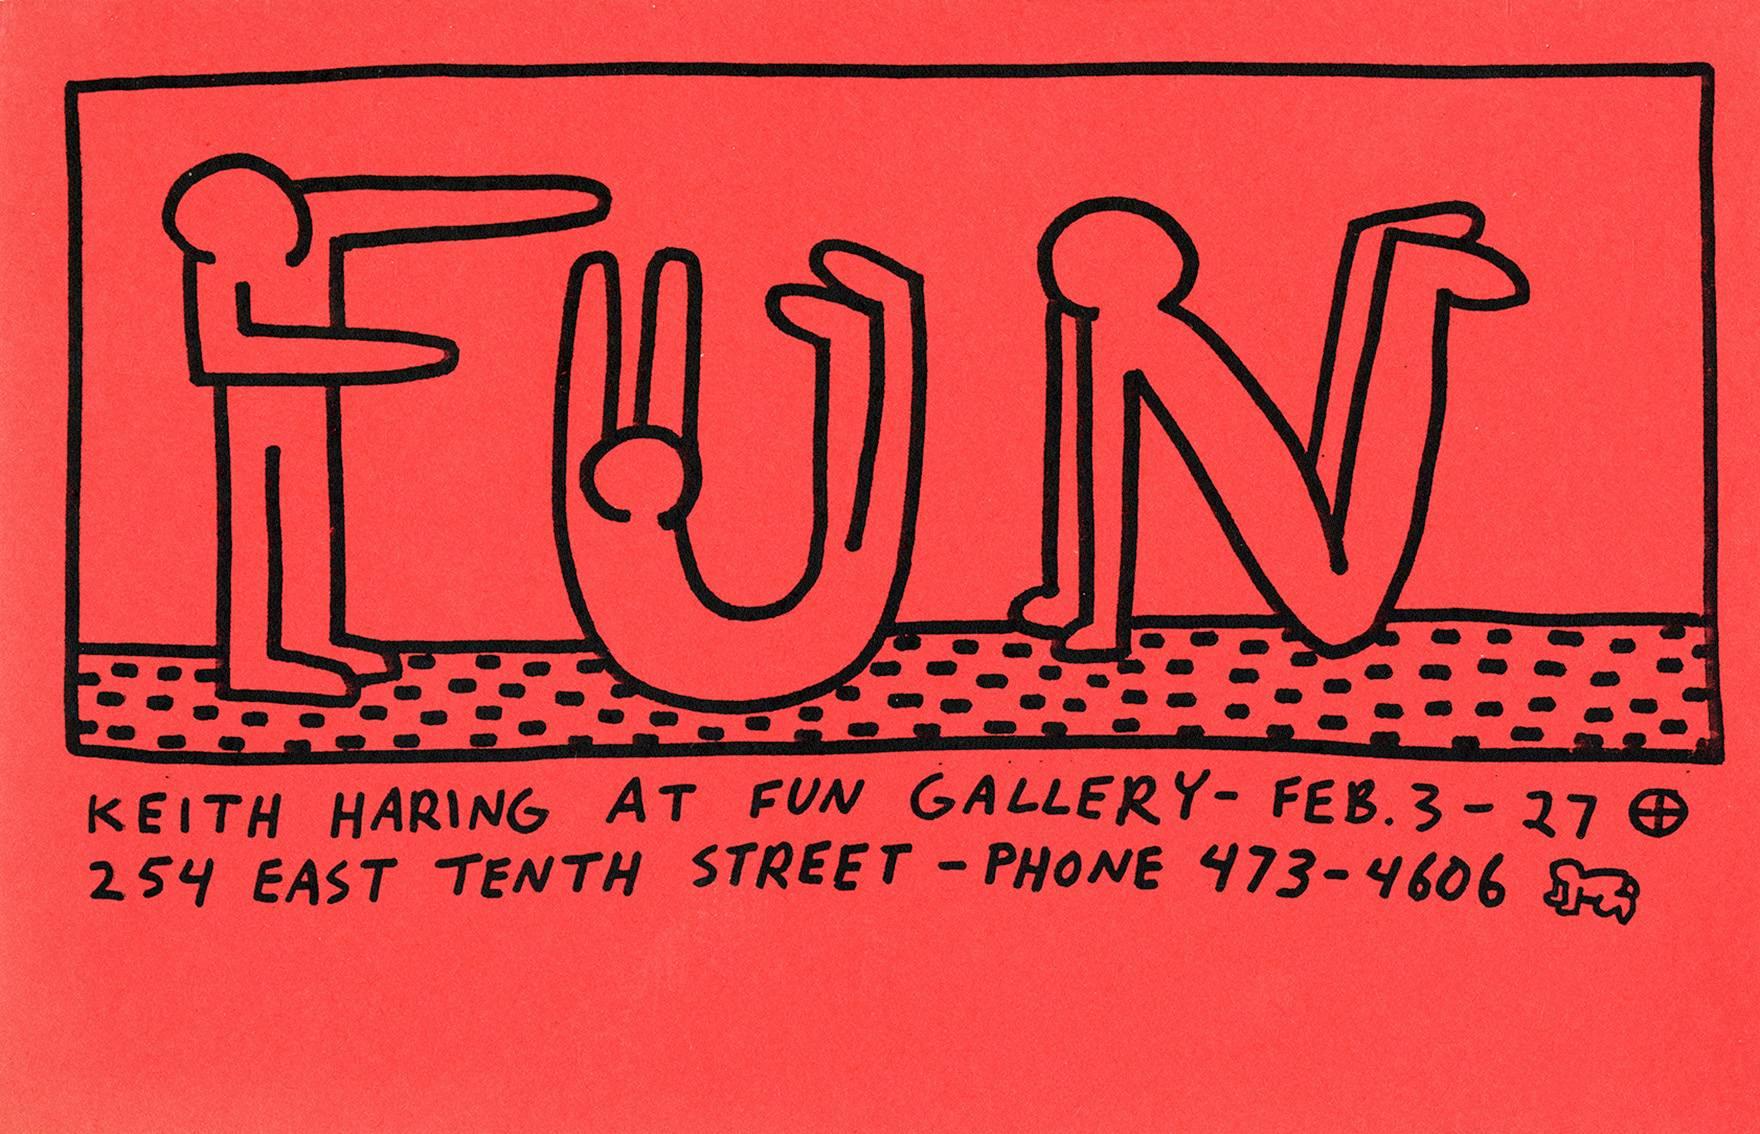 Keith Haring Fun Gallery 1983: 
Seltene illustrierte Original-Ankündigung von Keith Haring aus dem Jahr 1983, die anlässlich von Harings historischer Ausstellung 1983 in der Fun Gallery im East Village veröffentlicht wurde: Keith Haring in der Fun